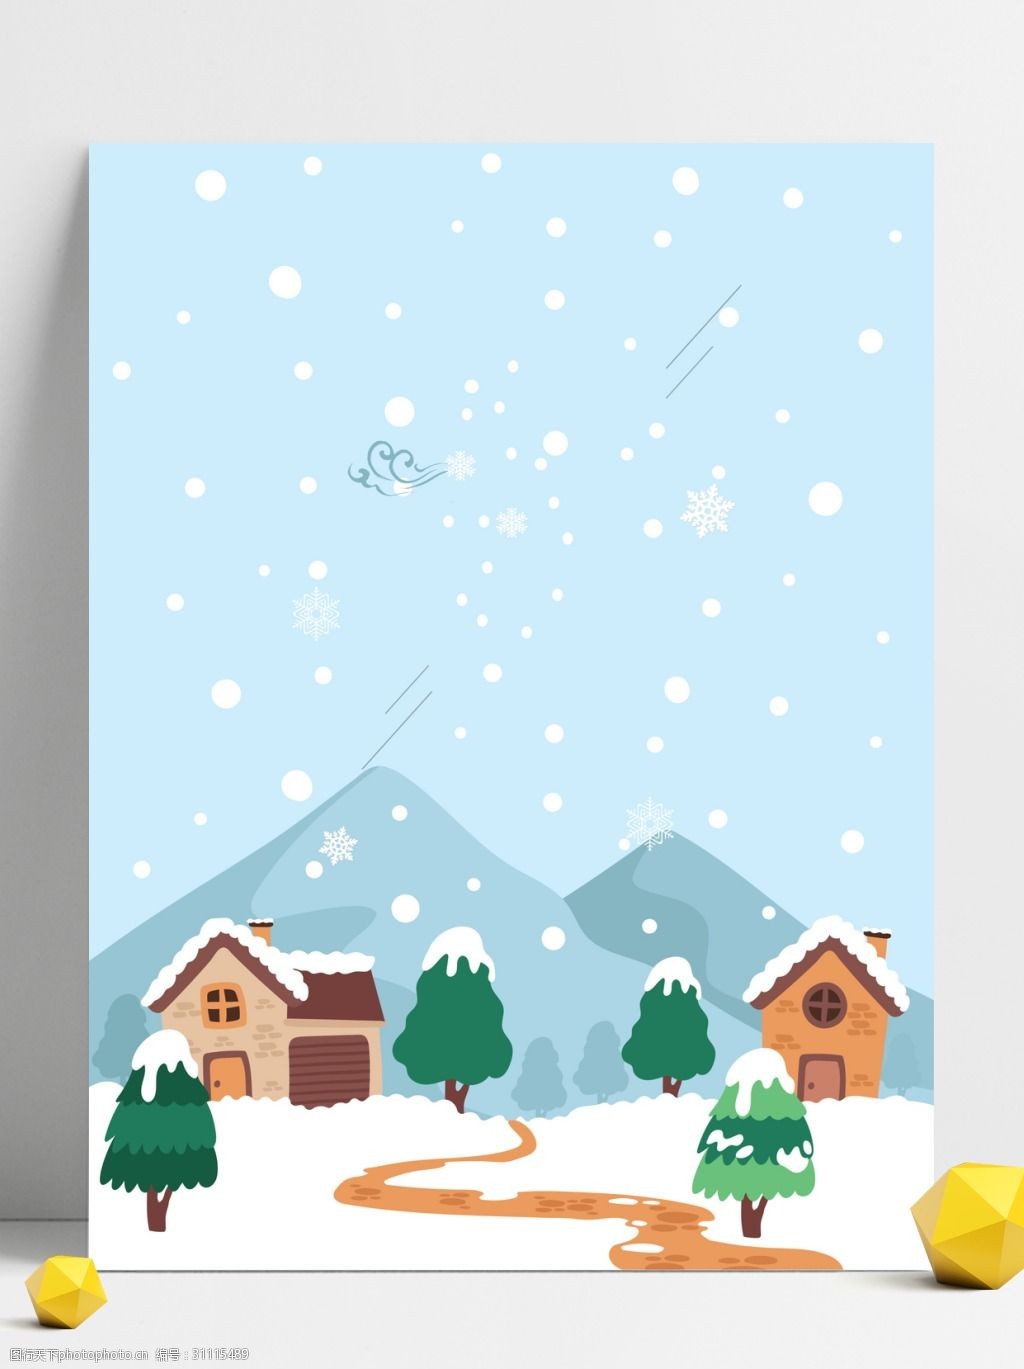 冬季手绘小清新雪景背景素材